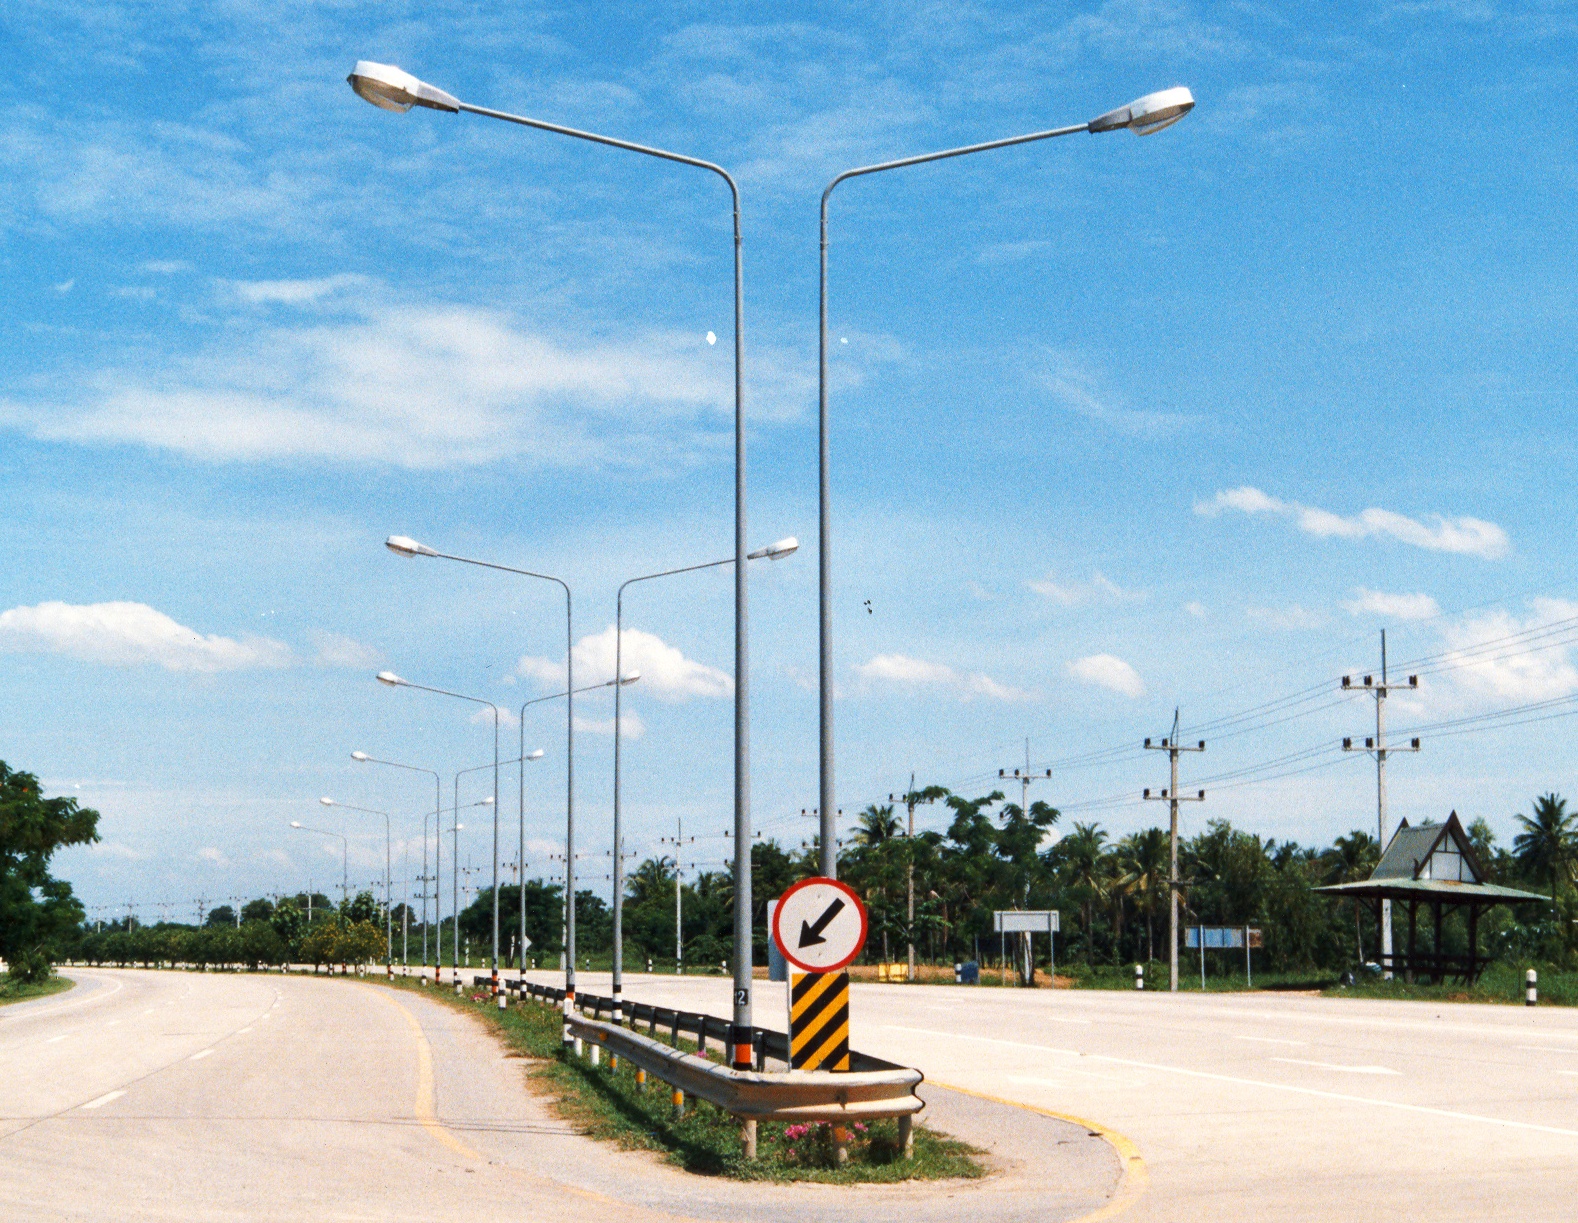 Light pole